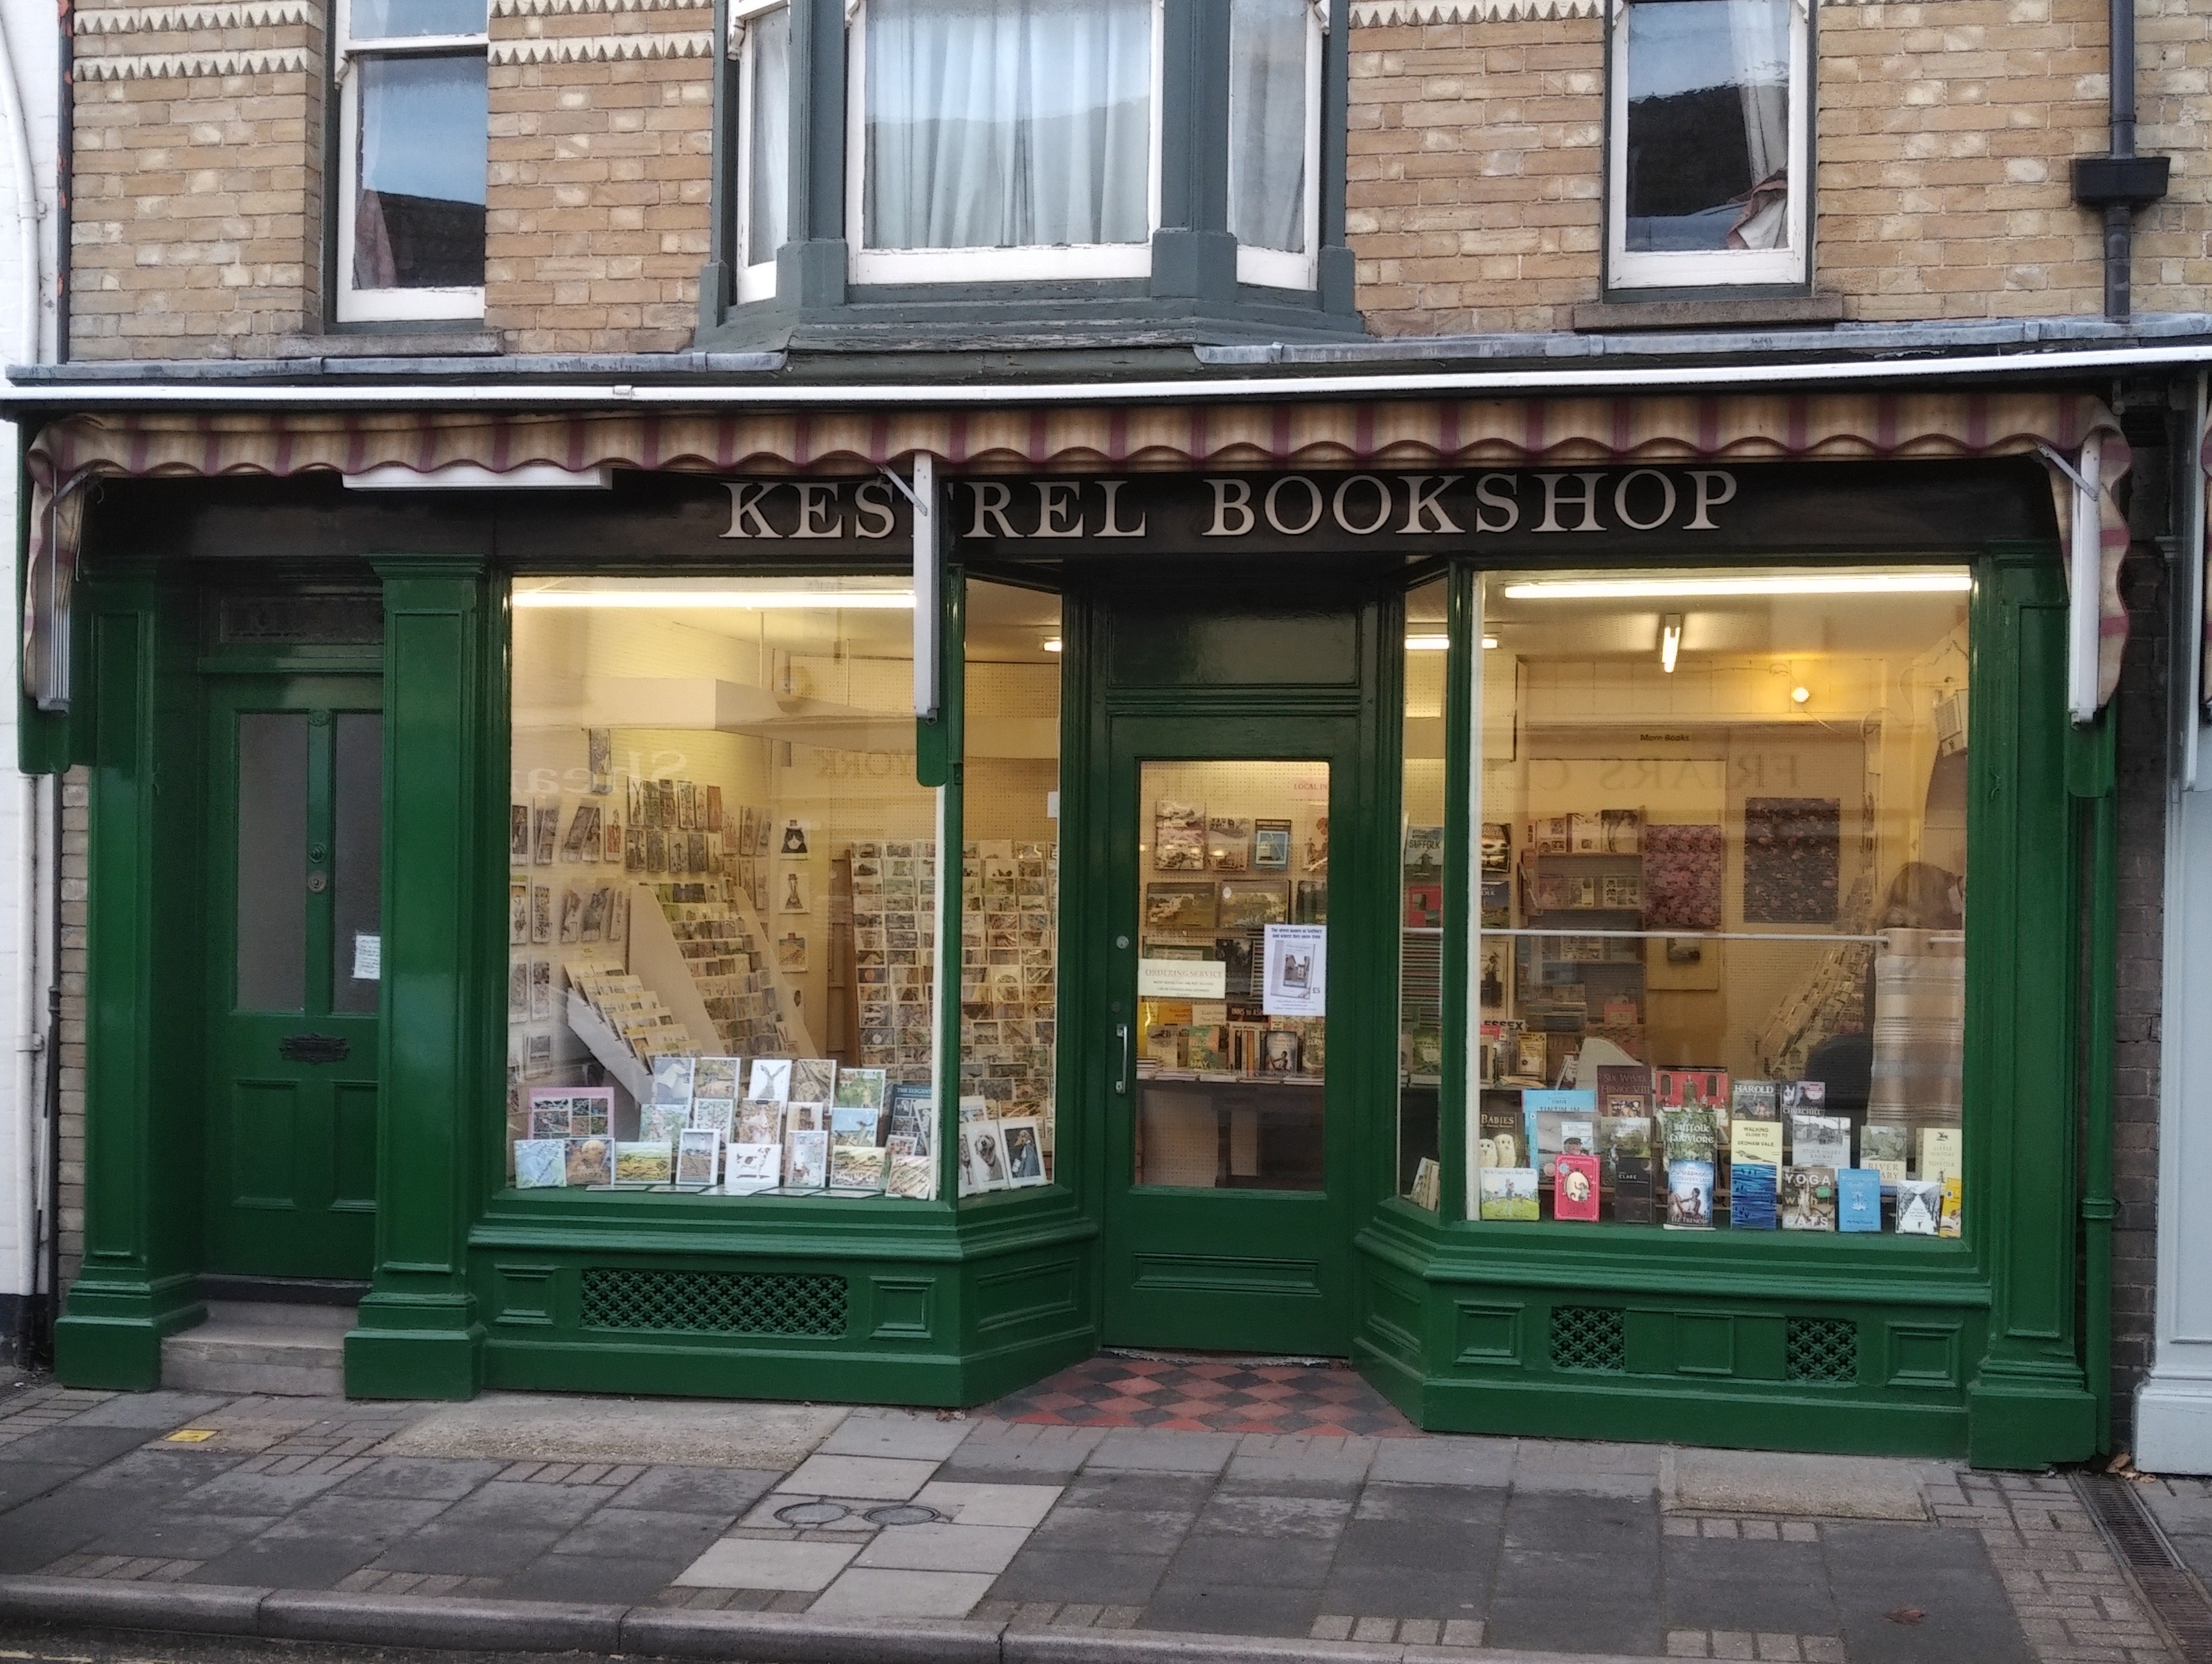 Kestrel Bookshop